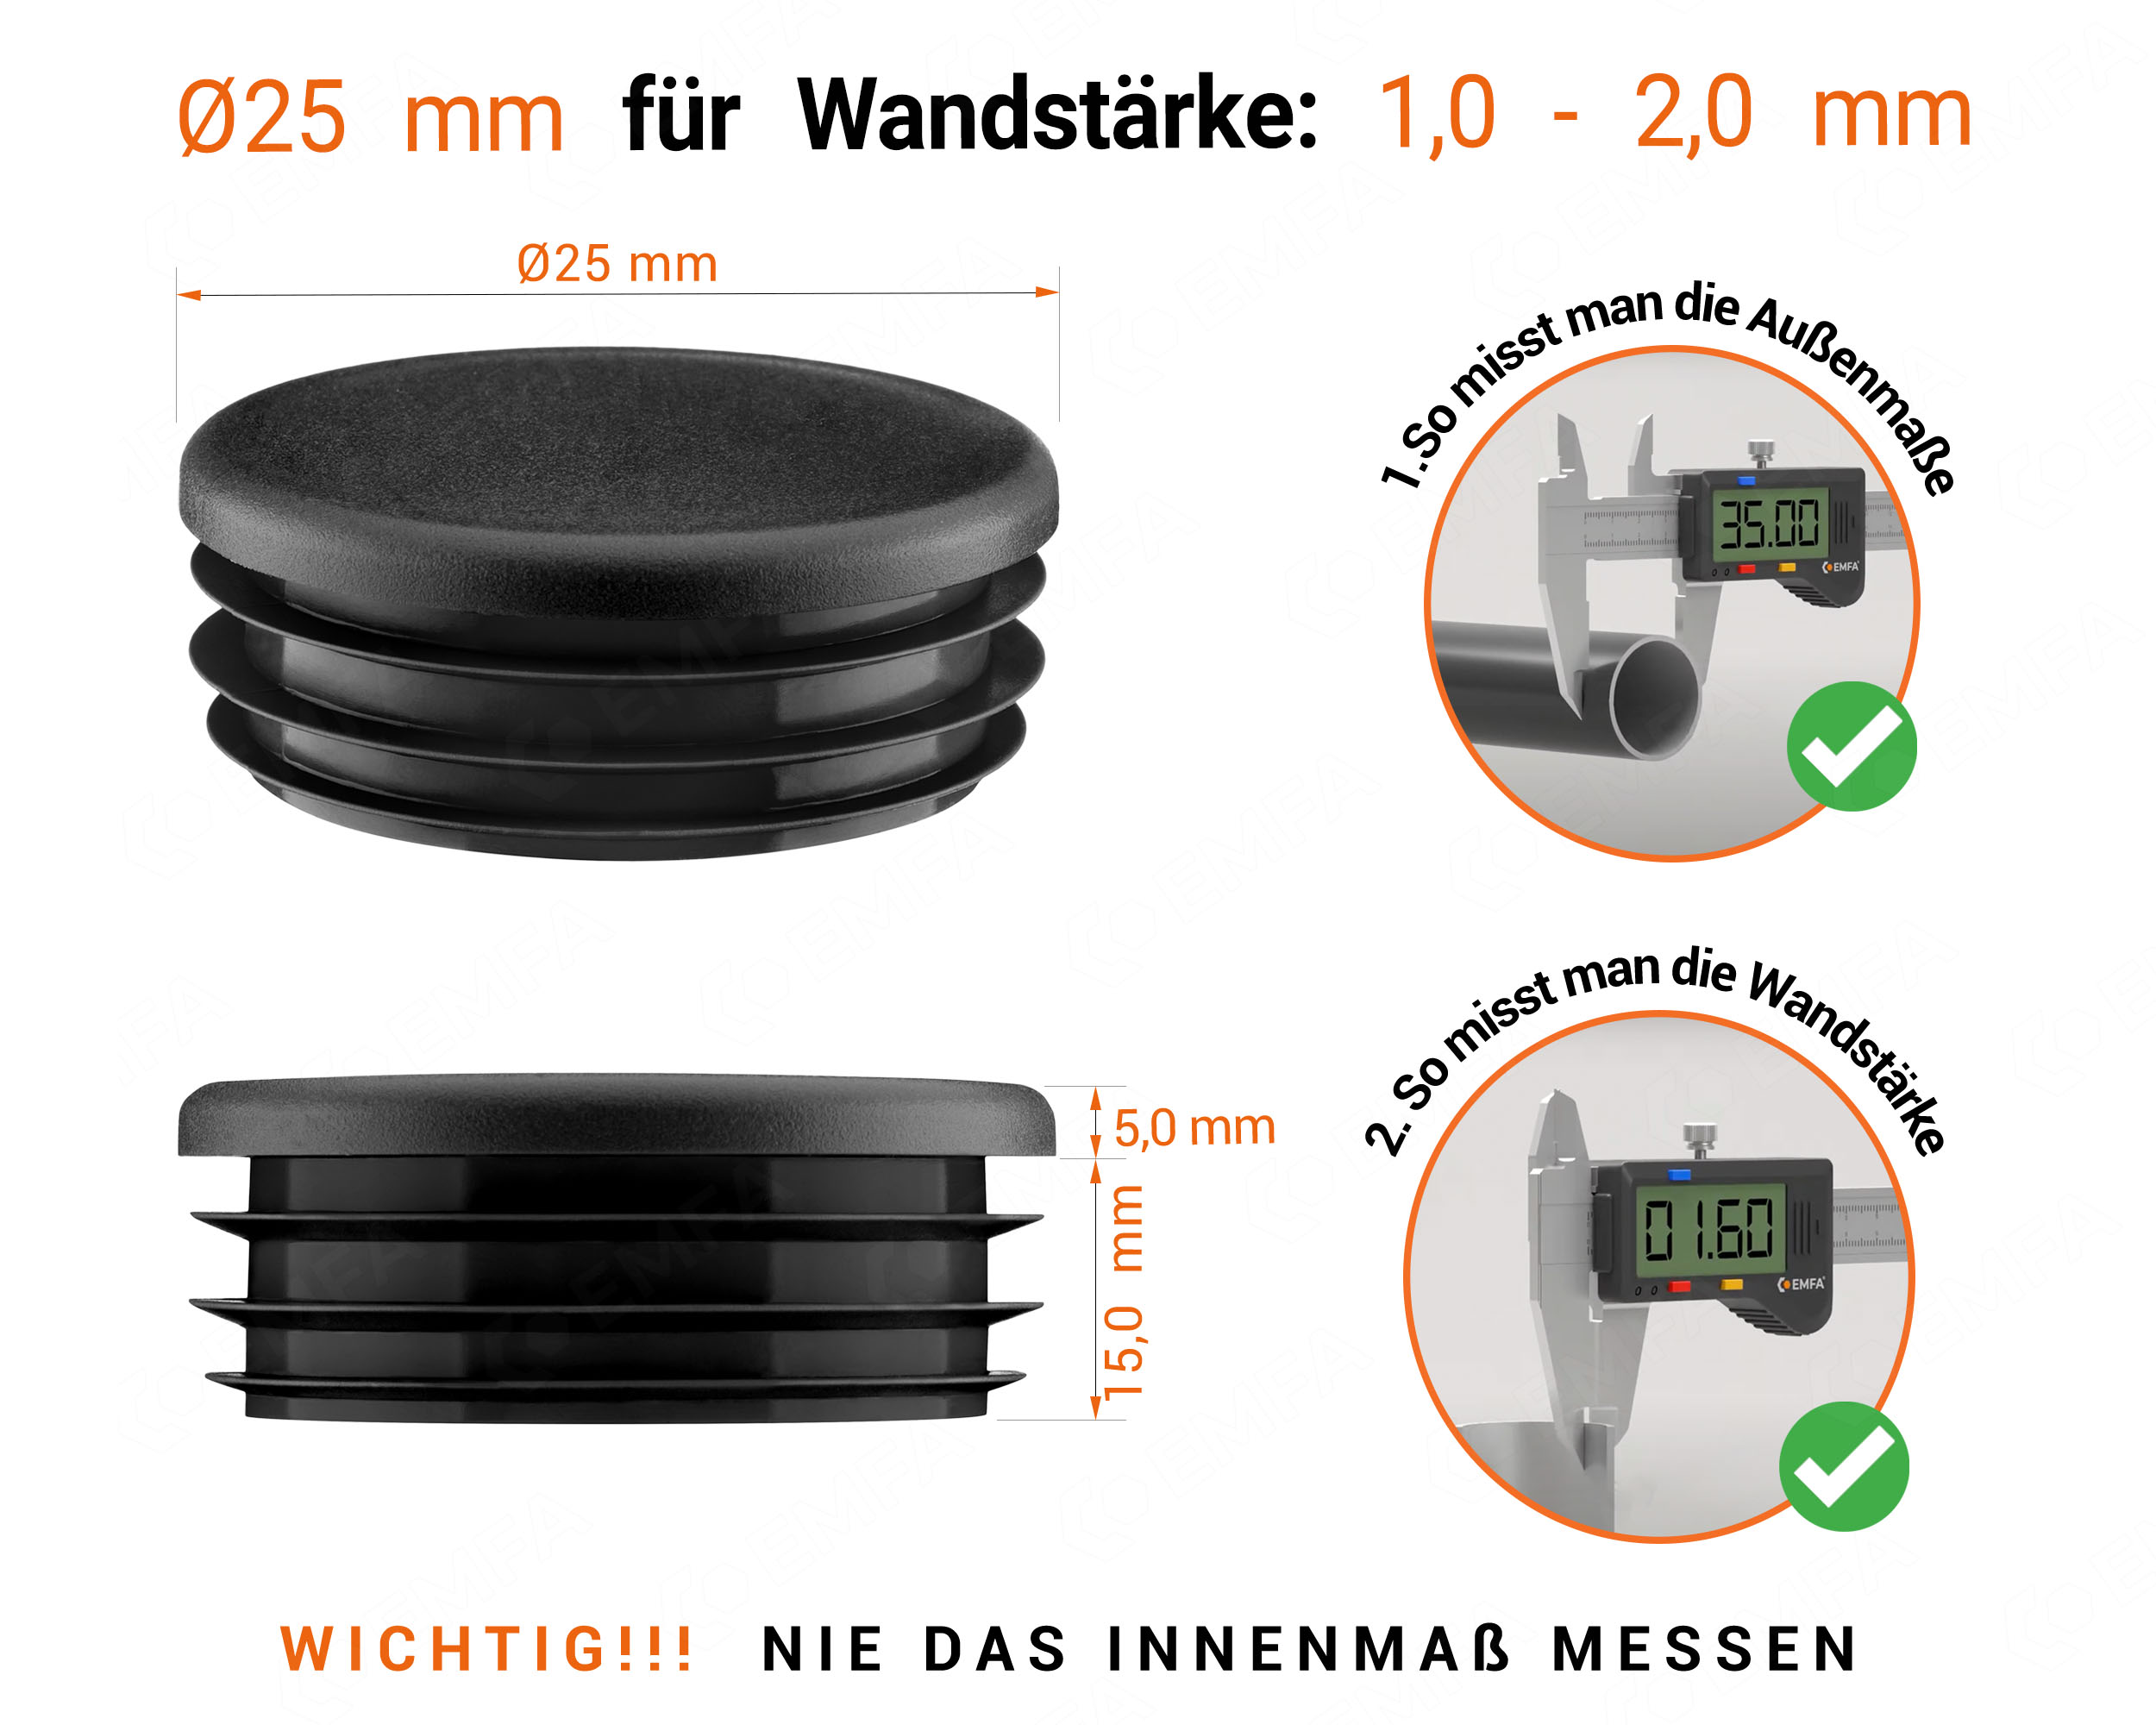 Schwarze Endkappe für Rundrohre in der Größe 25 mm mit technischen Abmessungen und Anleitung für korrekte Messung